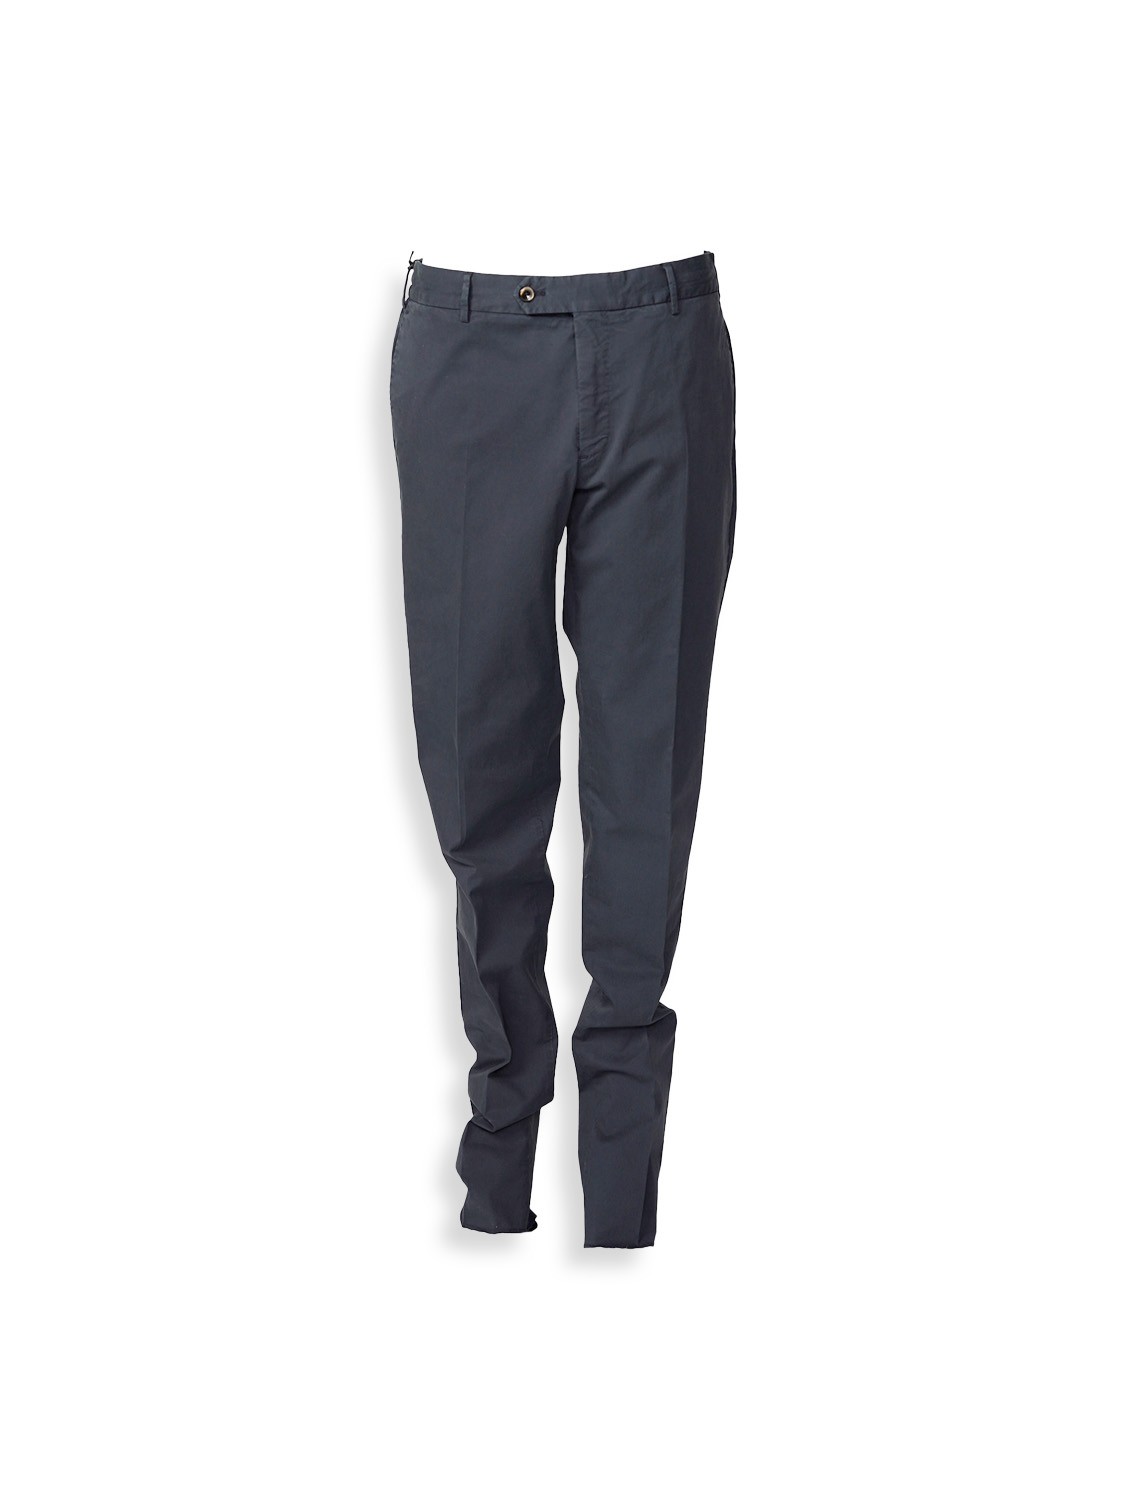 Jogger - cotton jogging style pants